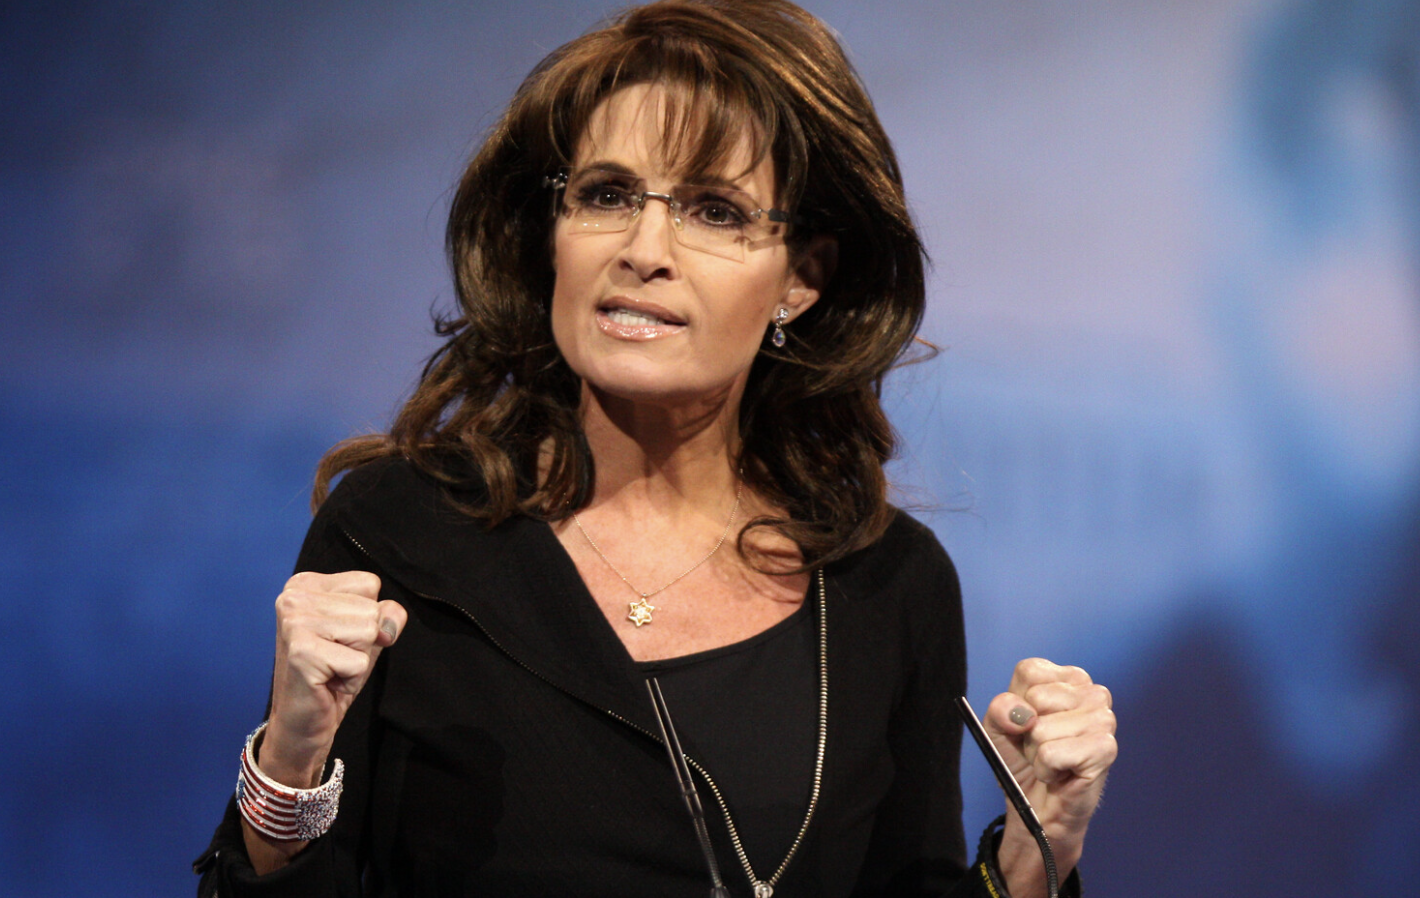 Former Governor Sarah Palin